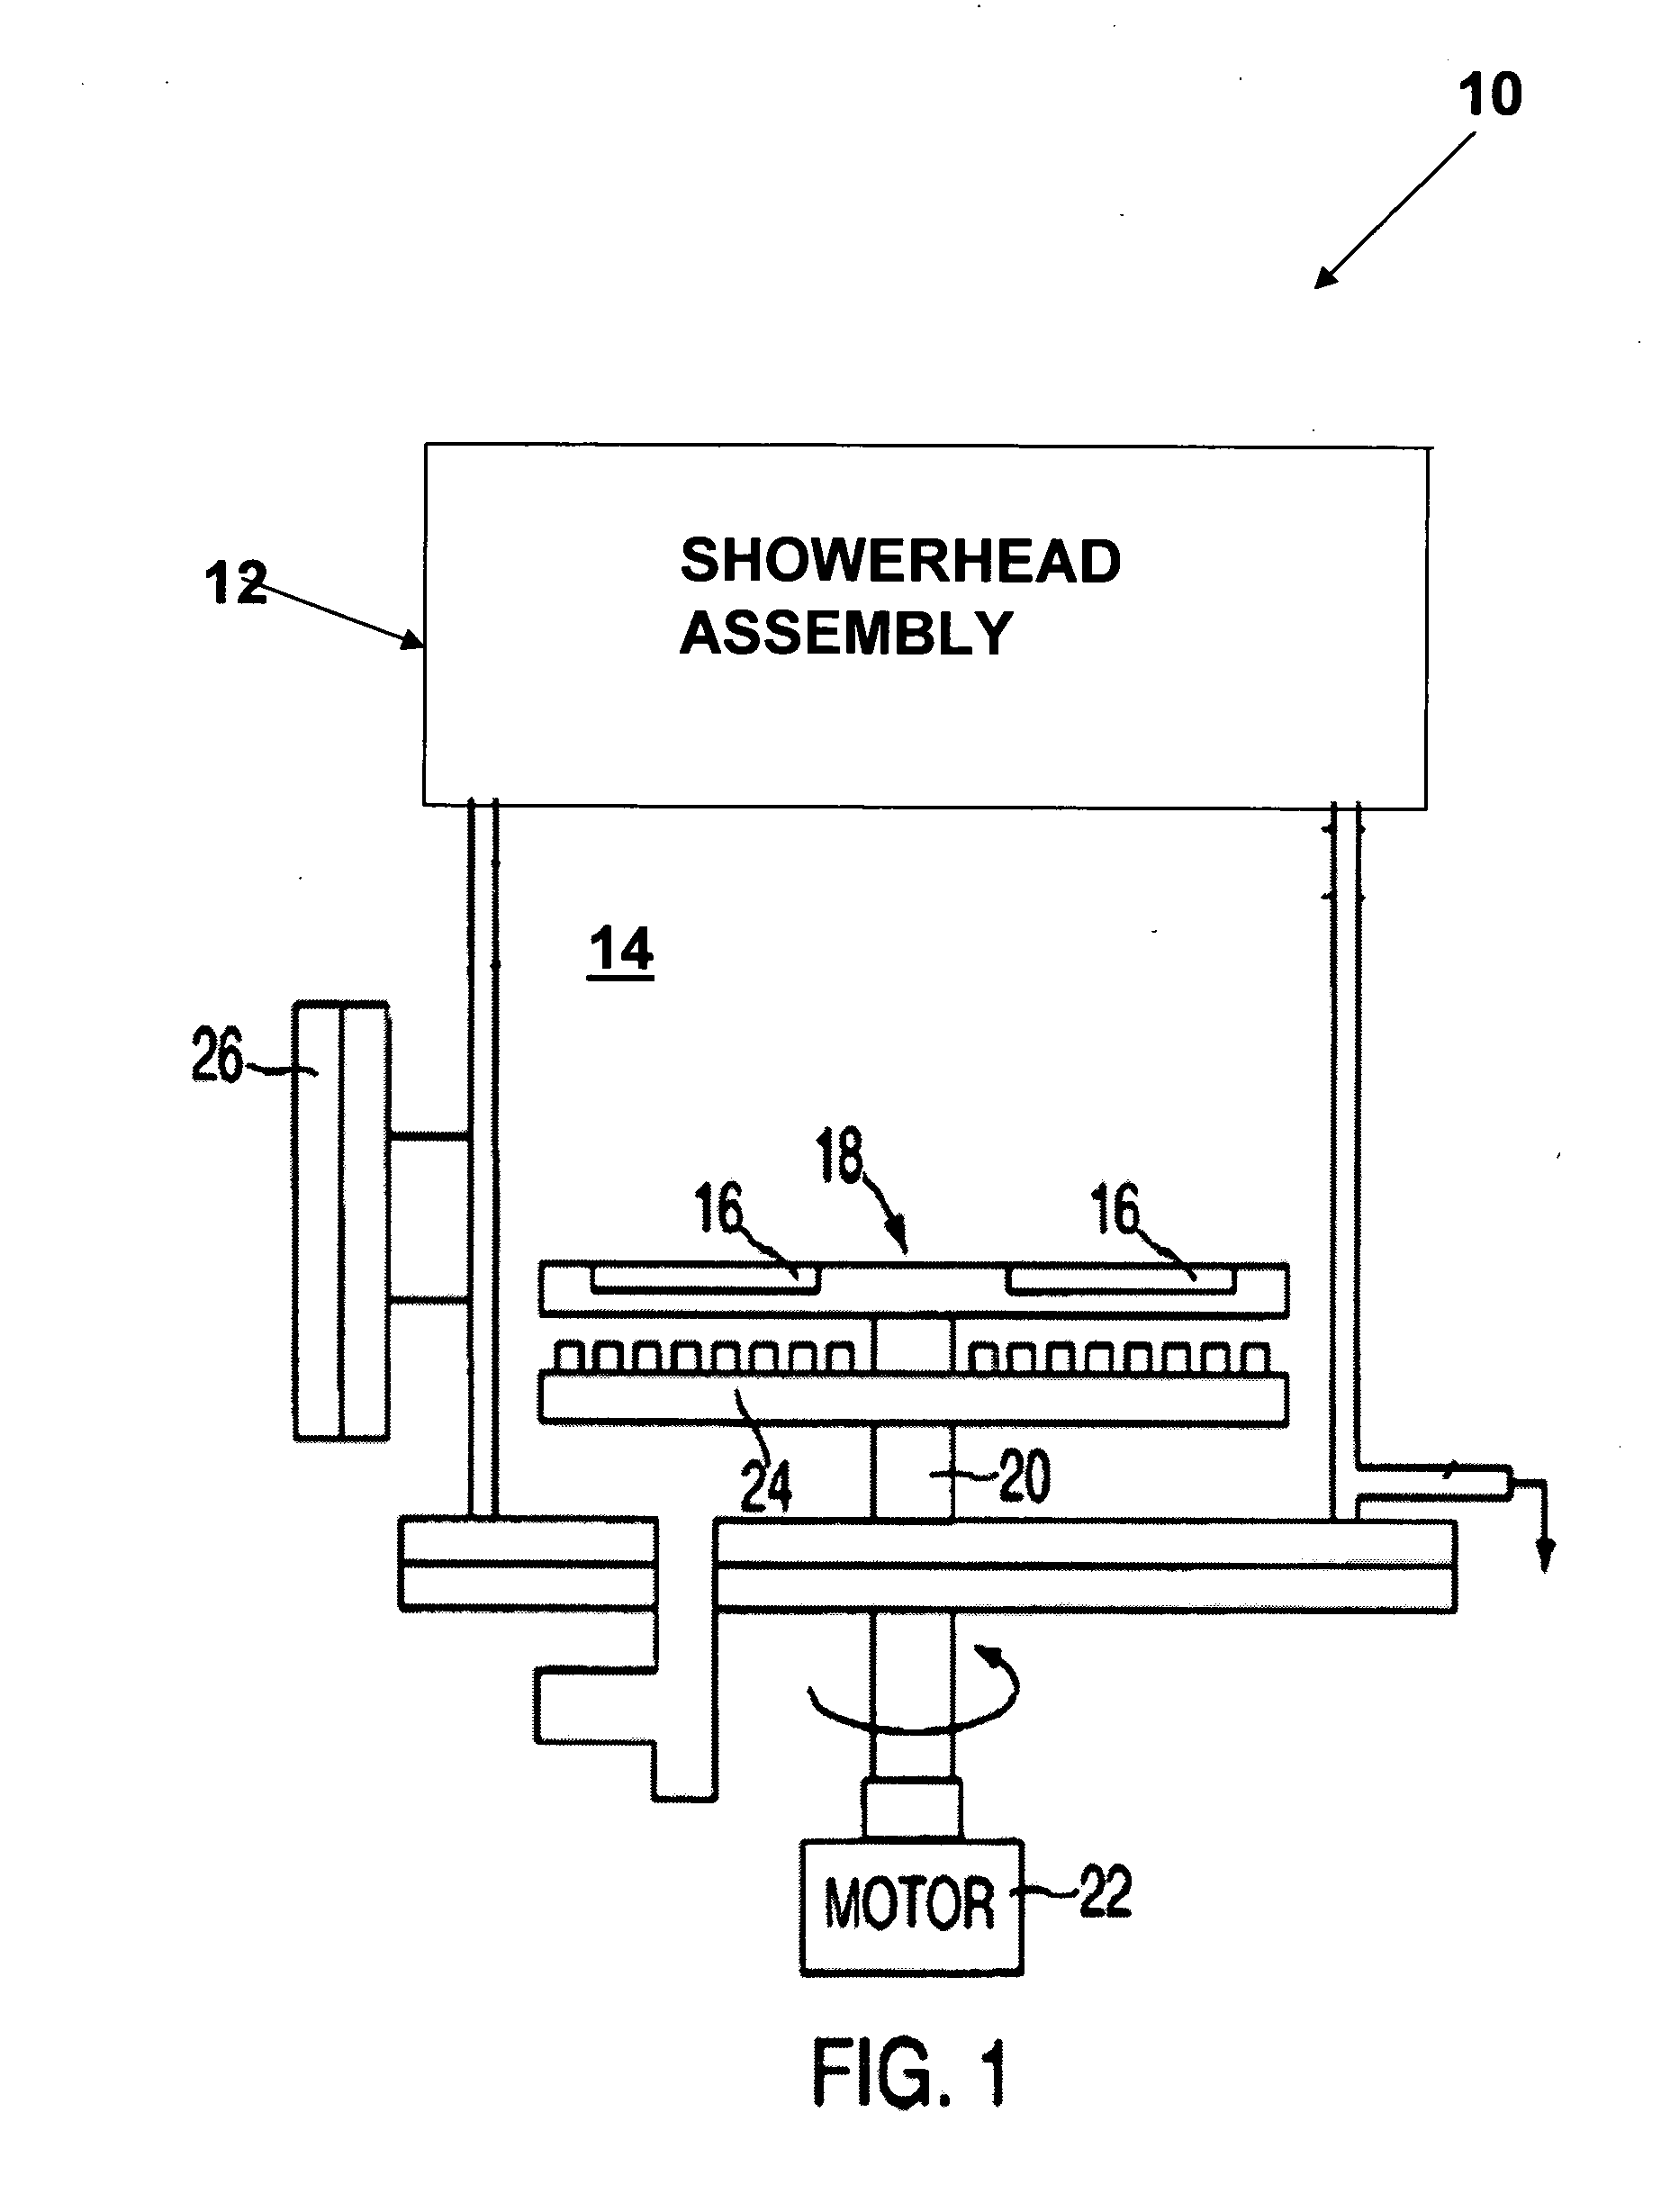 Showerhead for chemical vapor deposition (CVD) apparatus